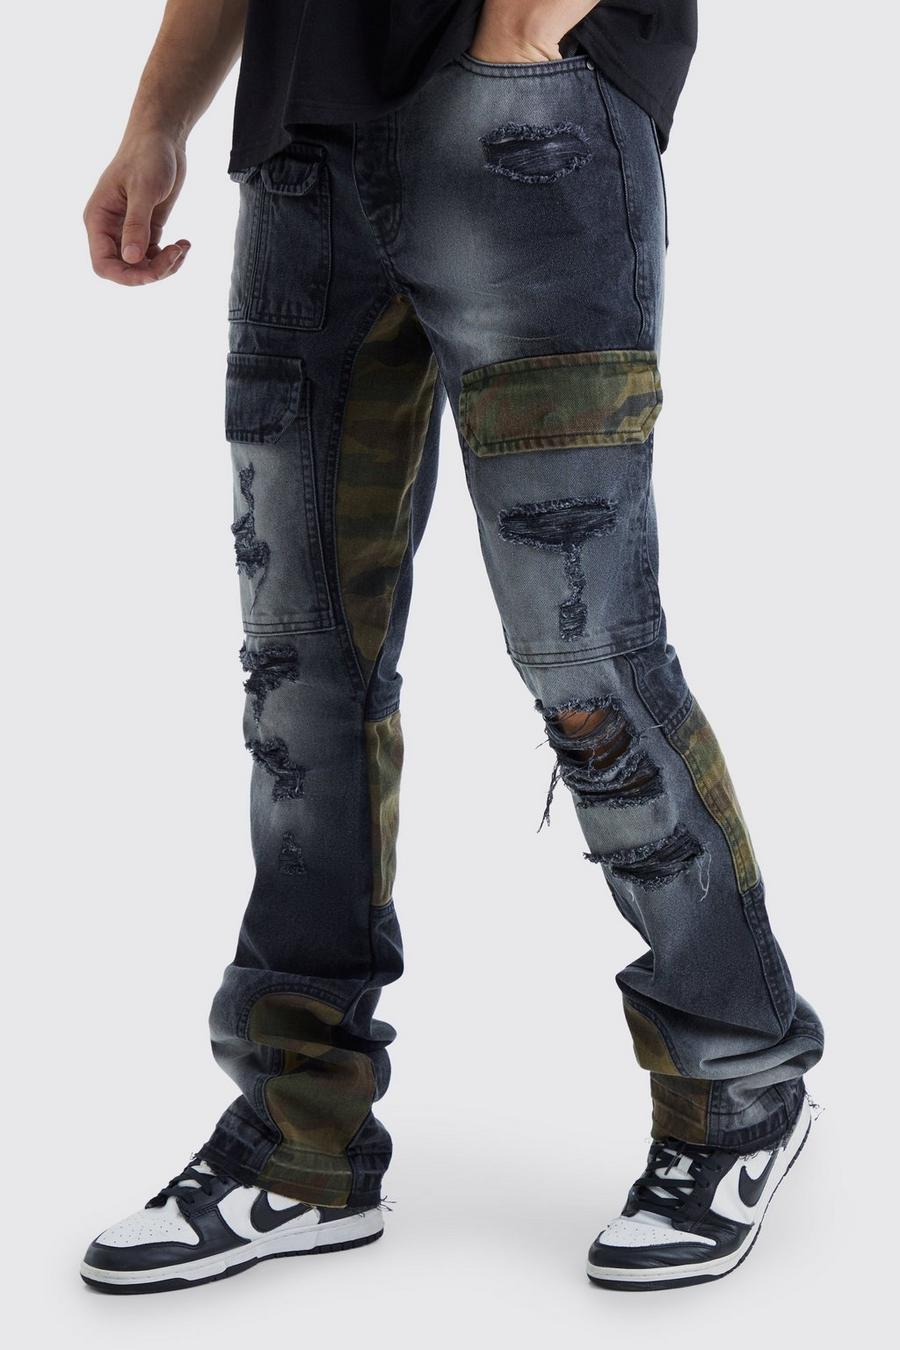 Jeans Cargo Tall Slim Fit in denim rigido in fantasia militare con rattoppi, Washed black